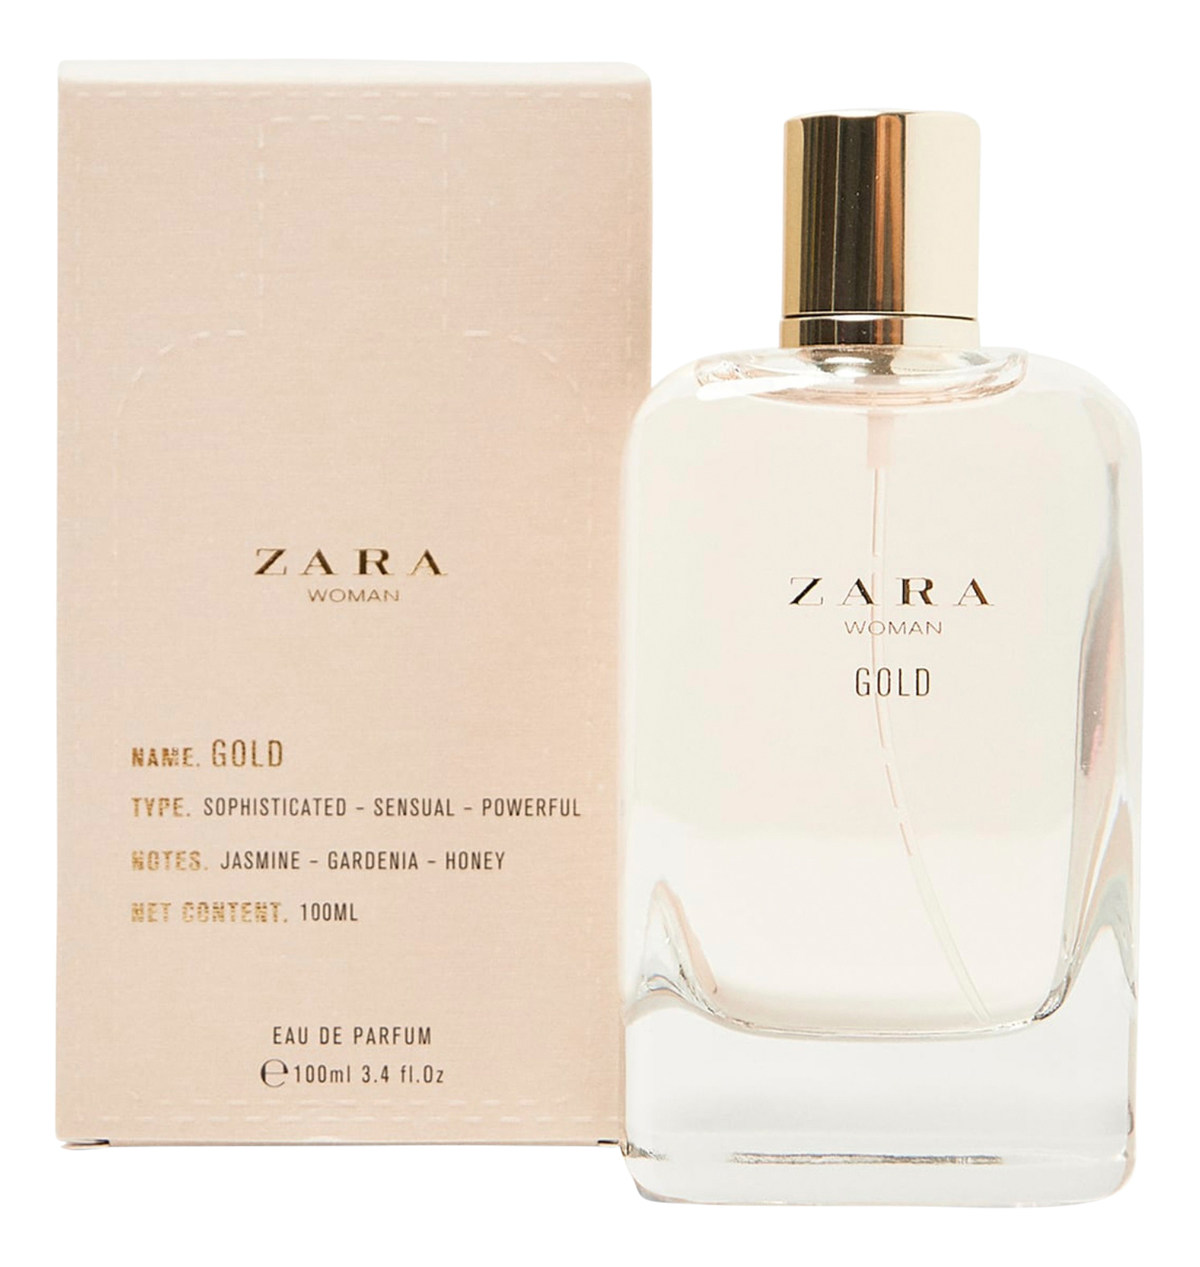 Zara - Woman Gold Eau de Parfum (Eau de Parfum) » Reviews & Perfume Facts